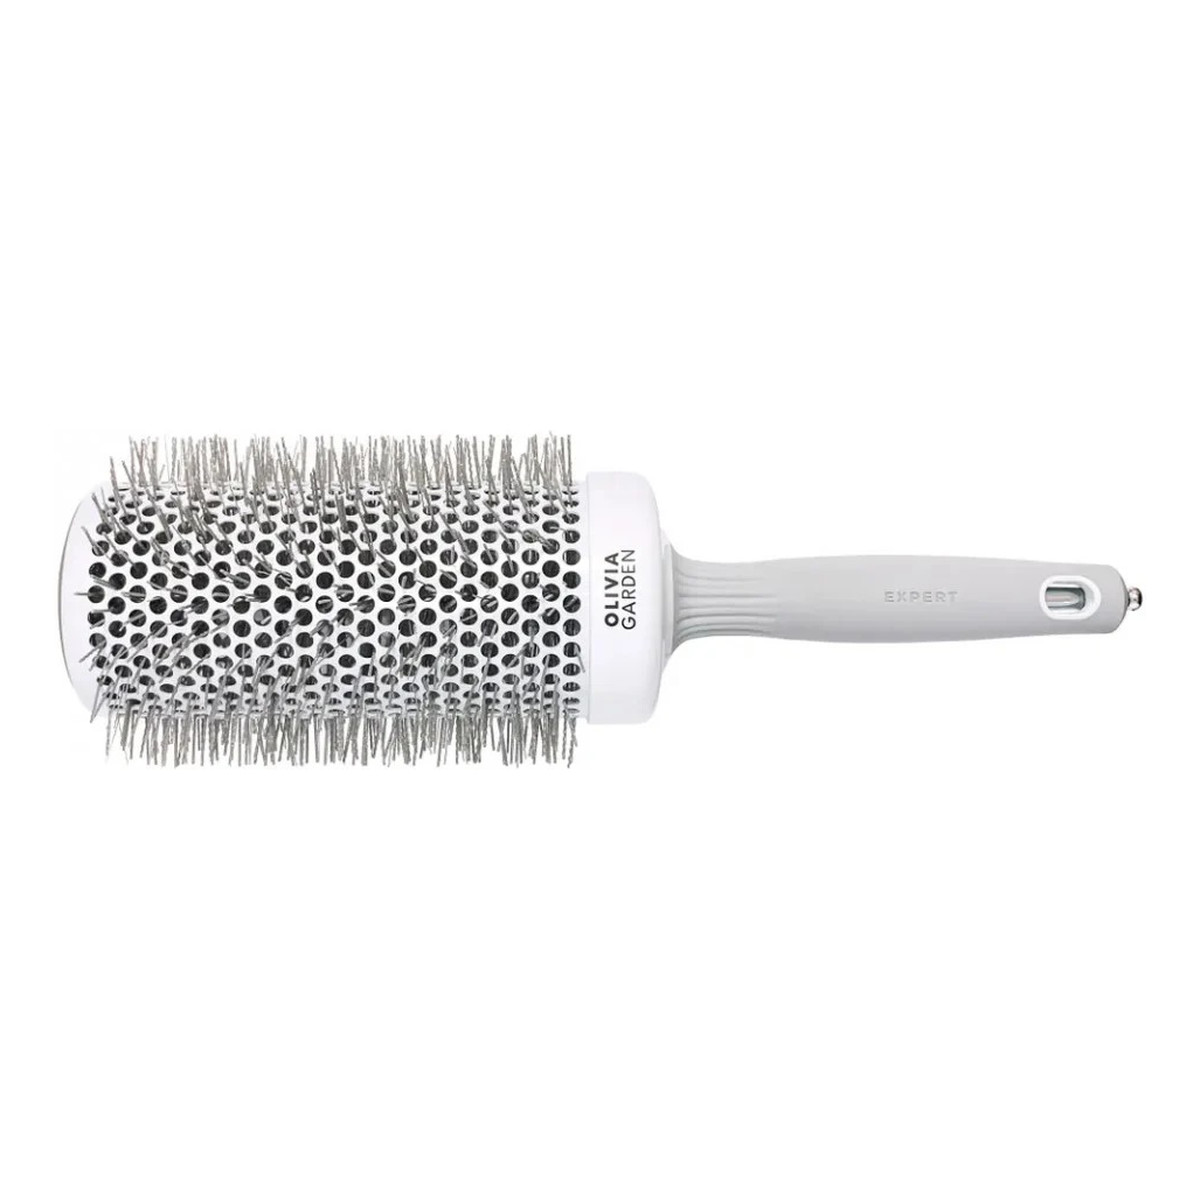 Olivia Garden Expert blowout speed wavy bristles szczotka do suszenia i modelowania włosów white/grey 65mm